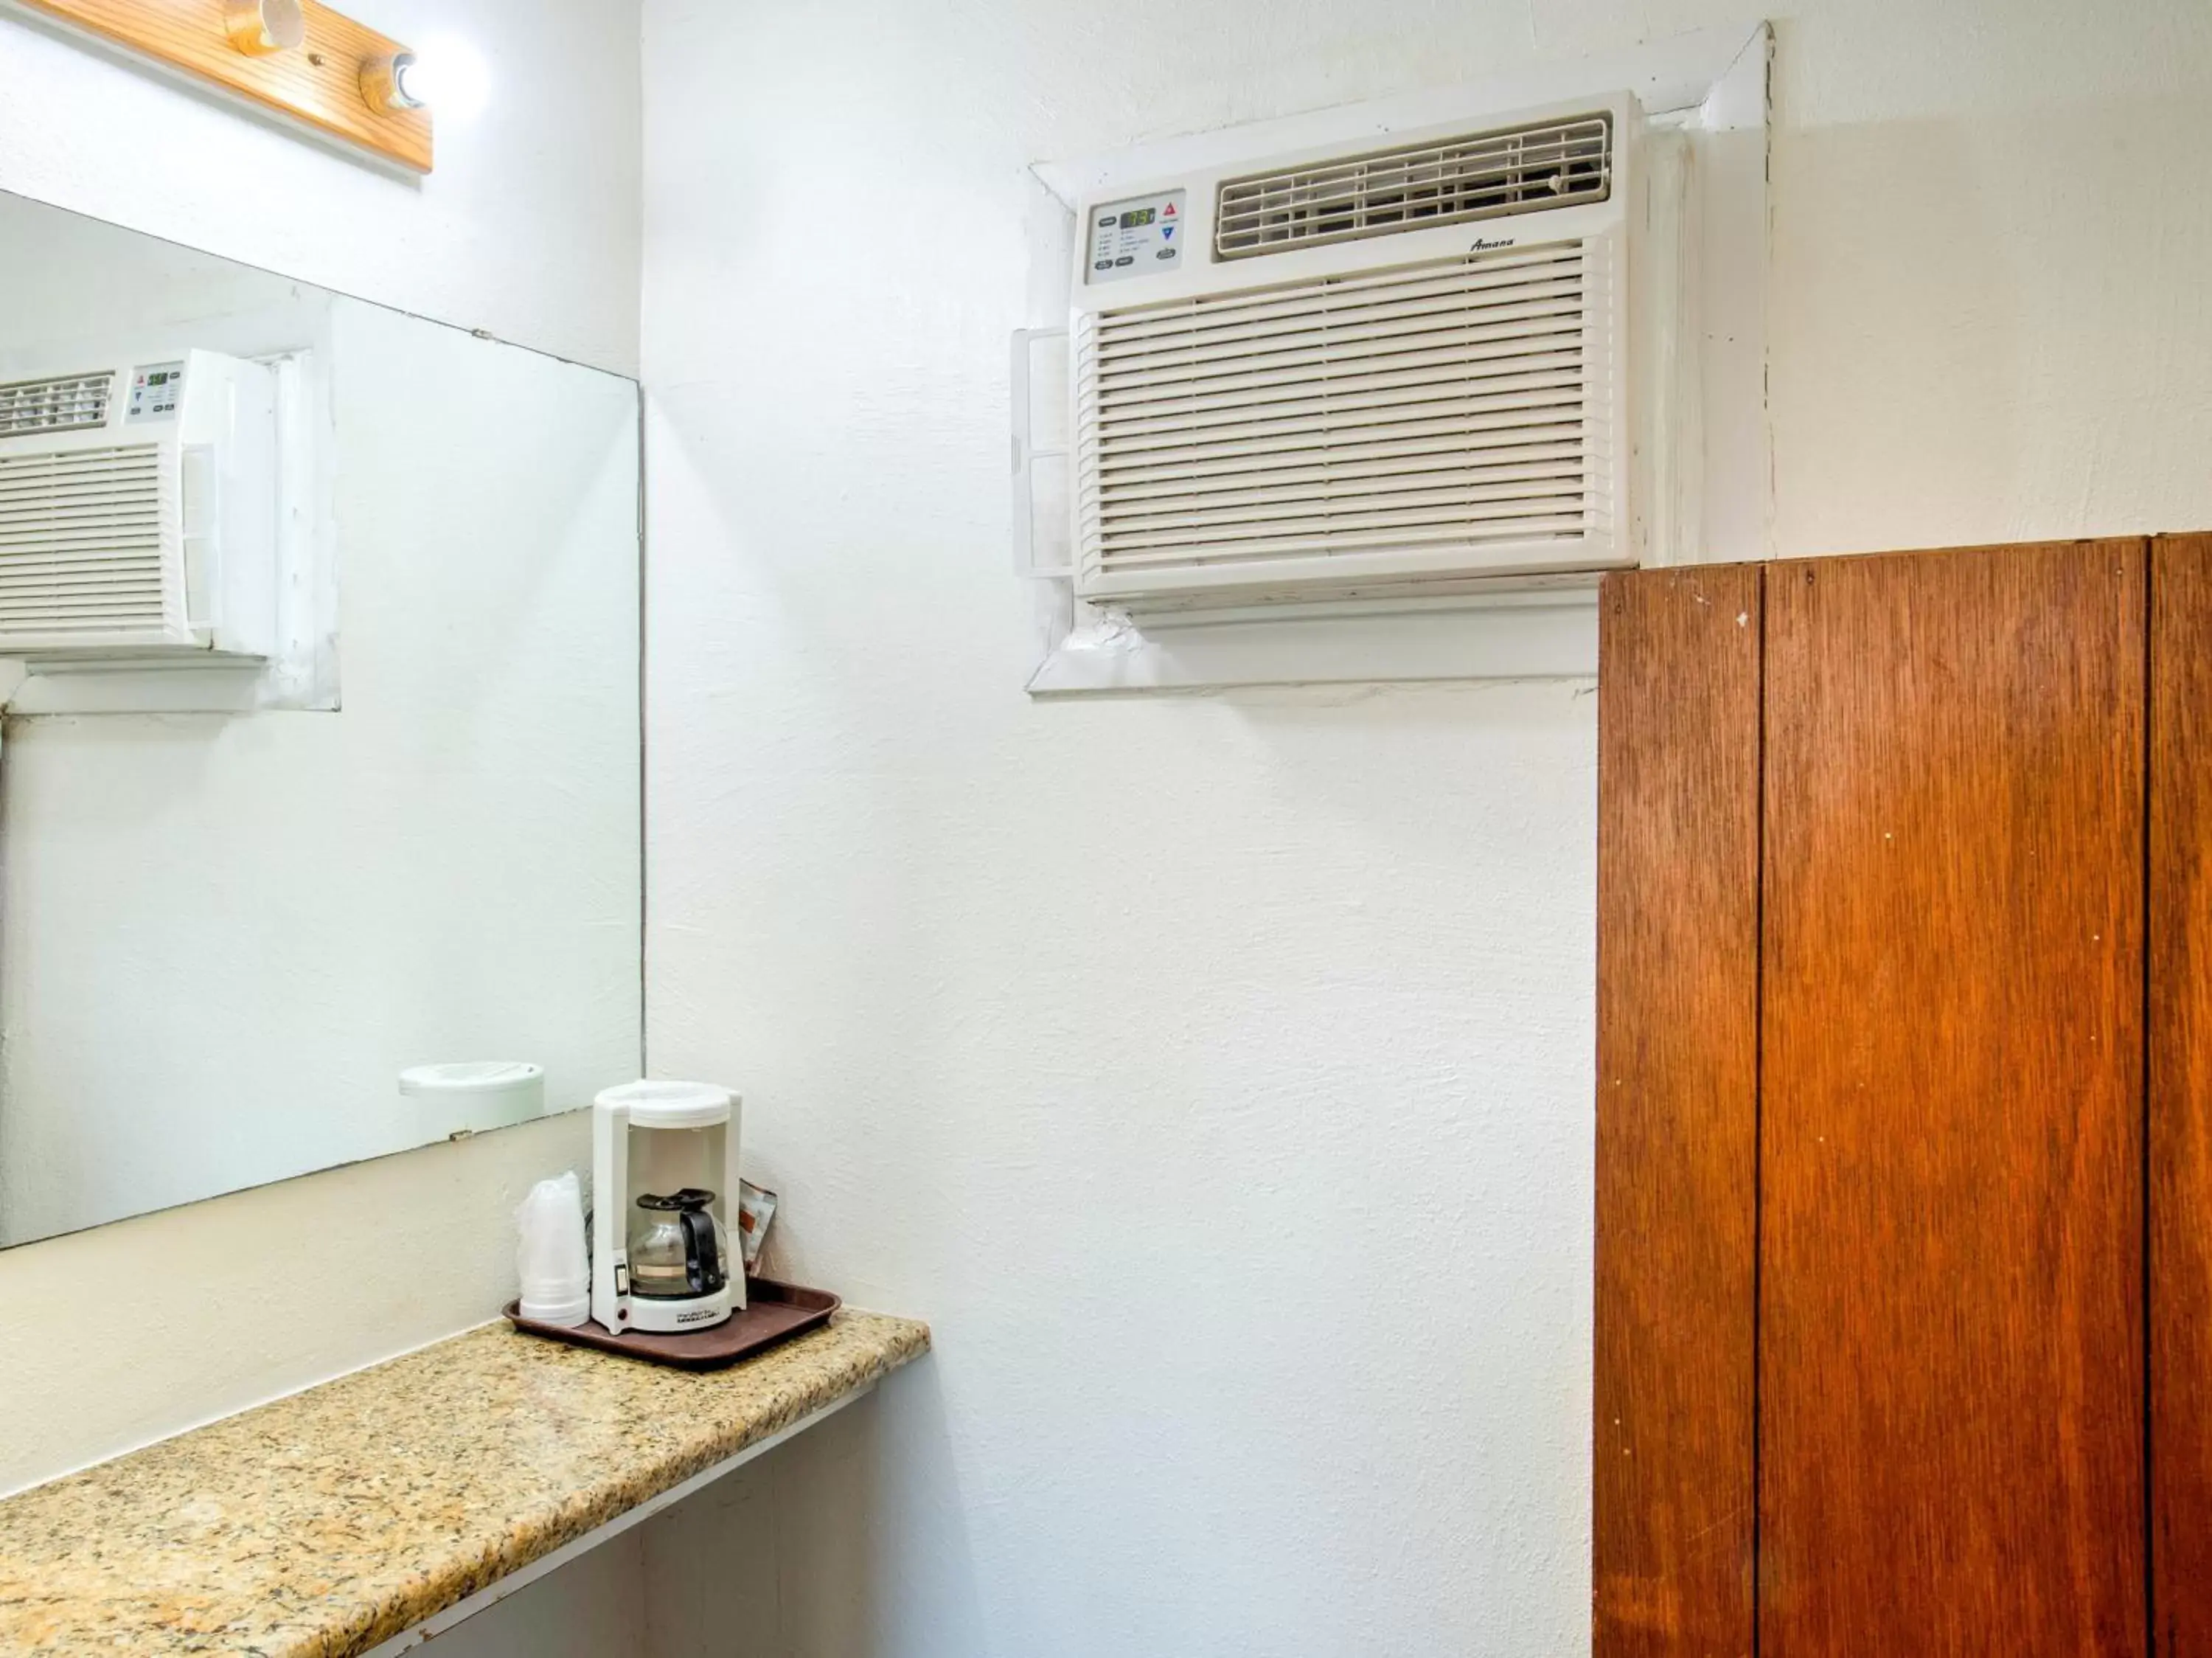 Area and facilities, Bathroom in Capital O Padre Island Corpus Christi